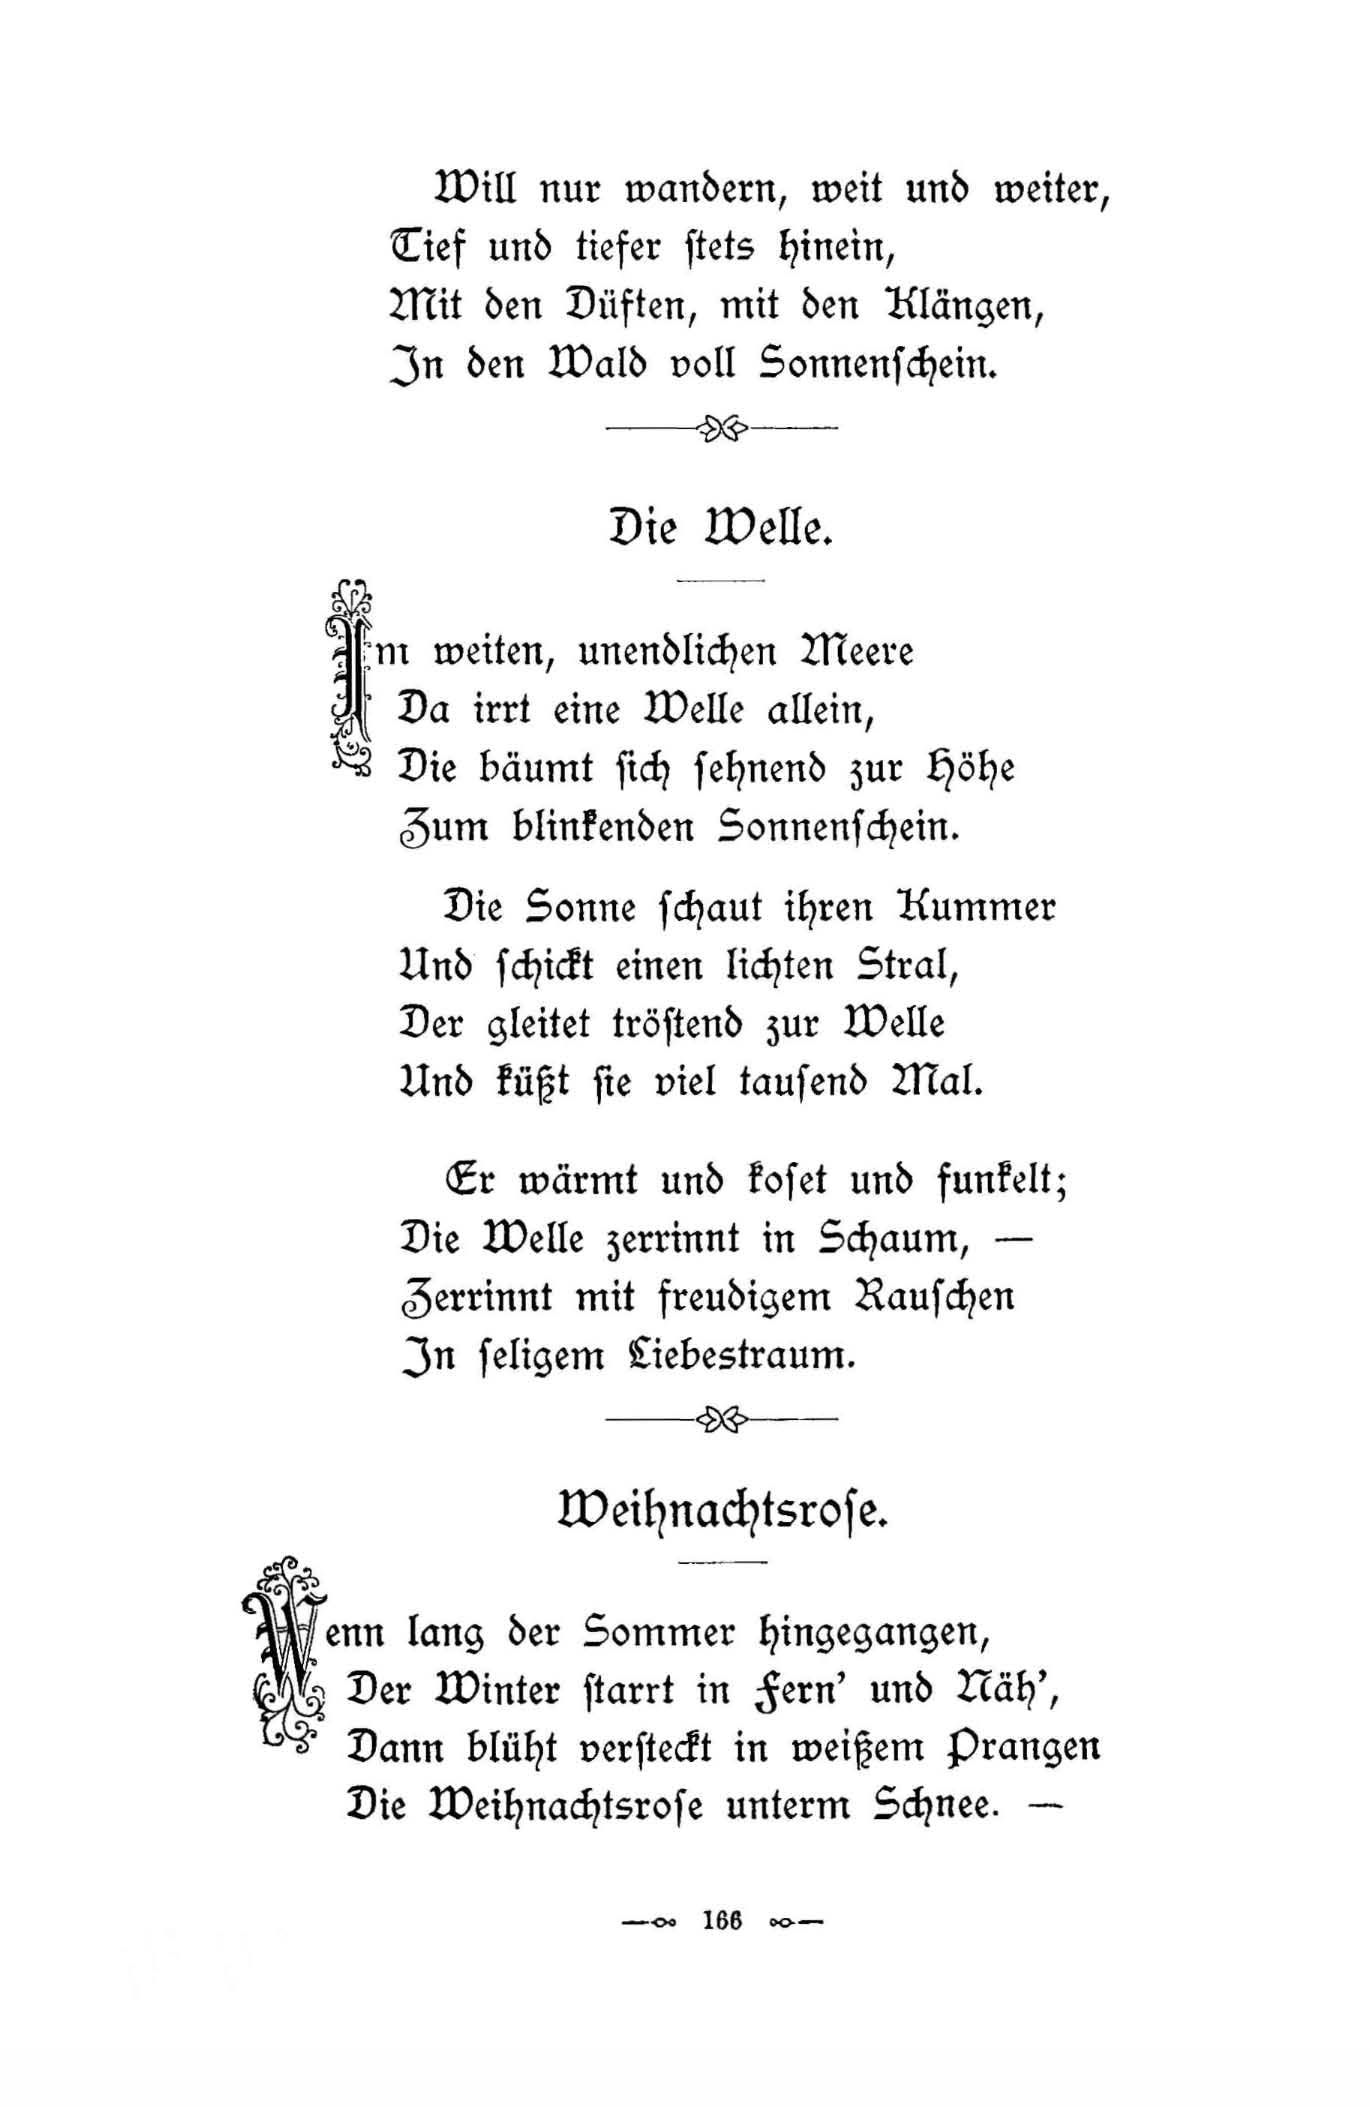 Weihnachtsrose (1896) | 1. (166) Haupttext